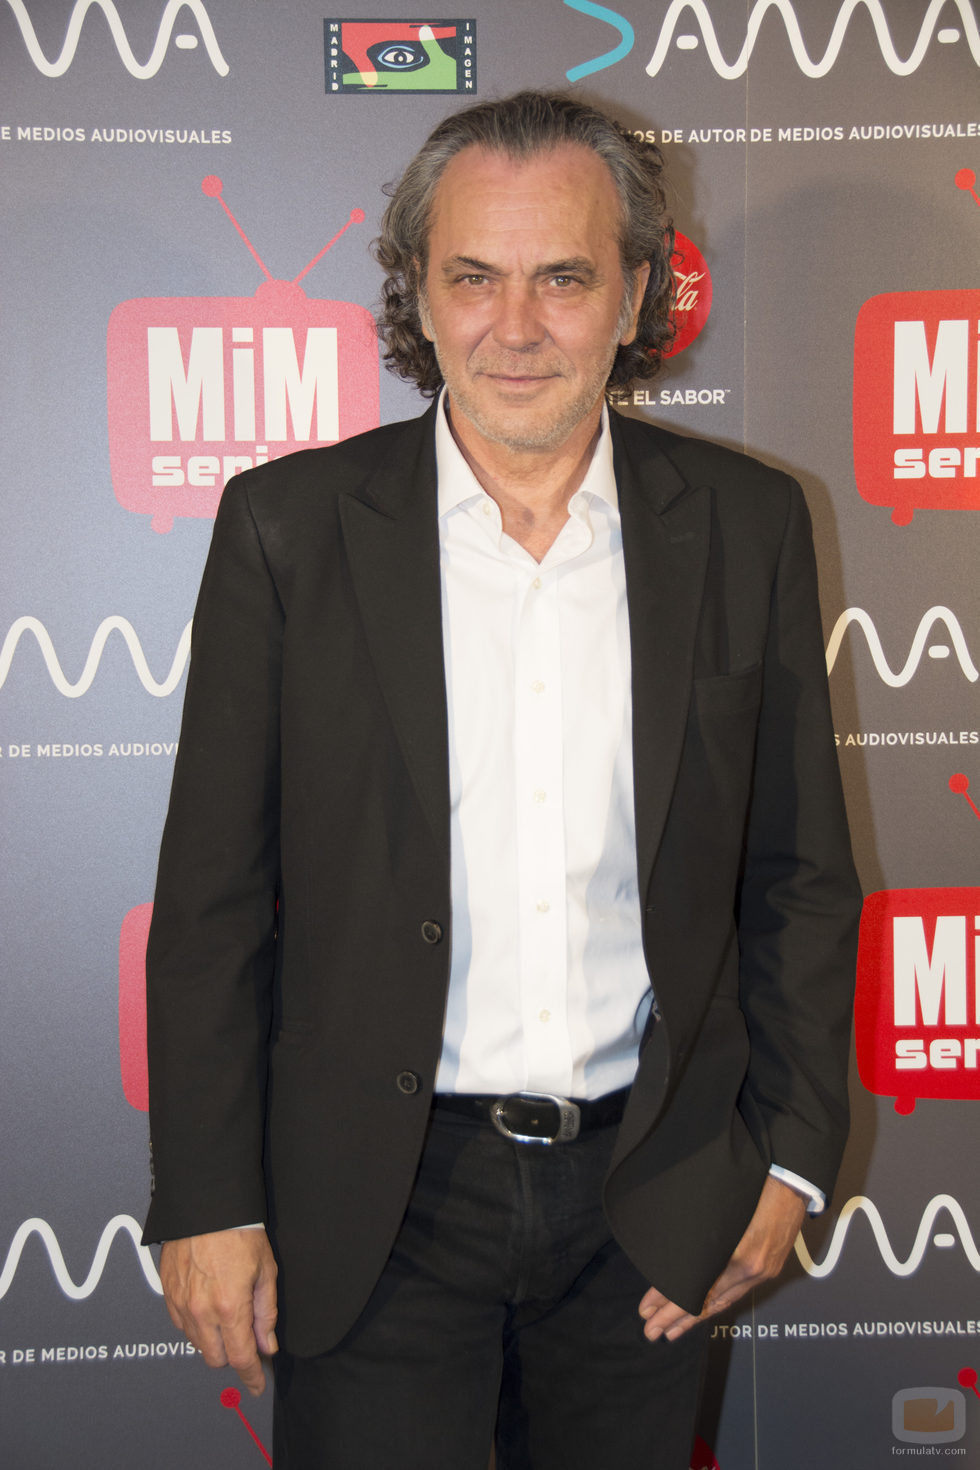 El actor José Coronado posando en los Premios MiM 2016